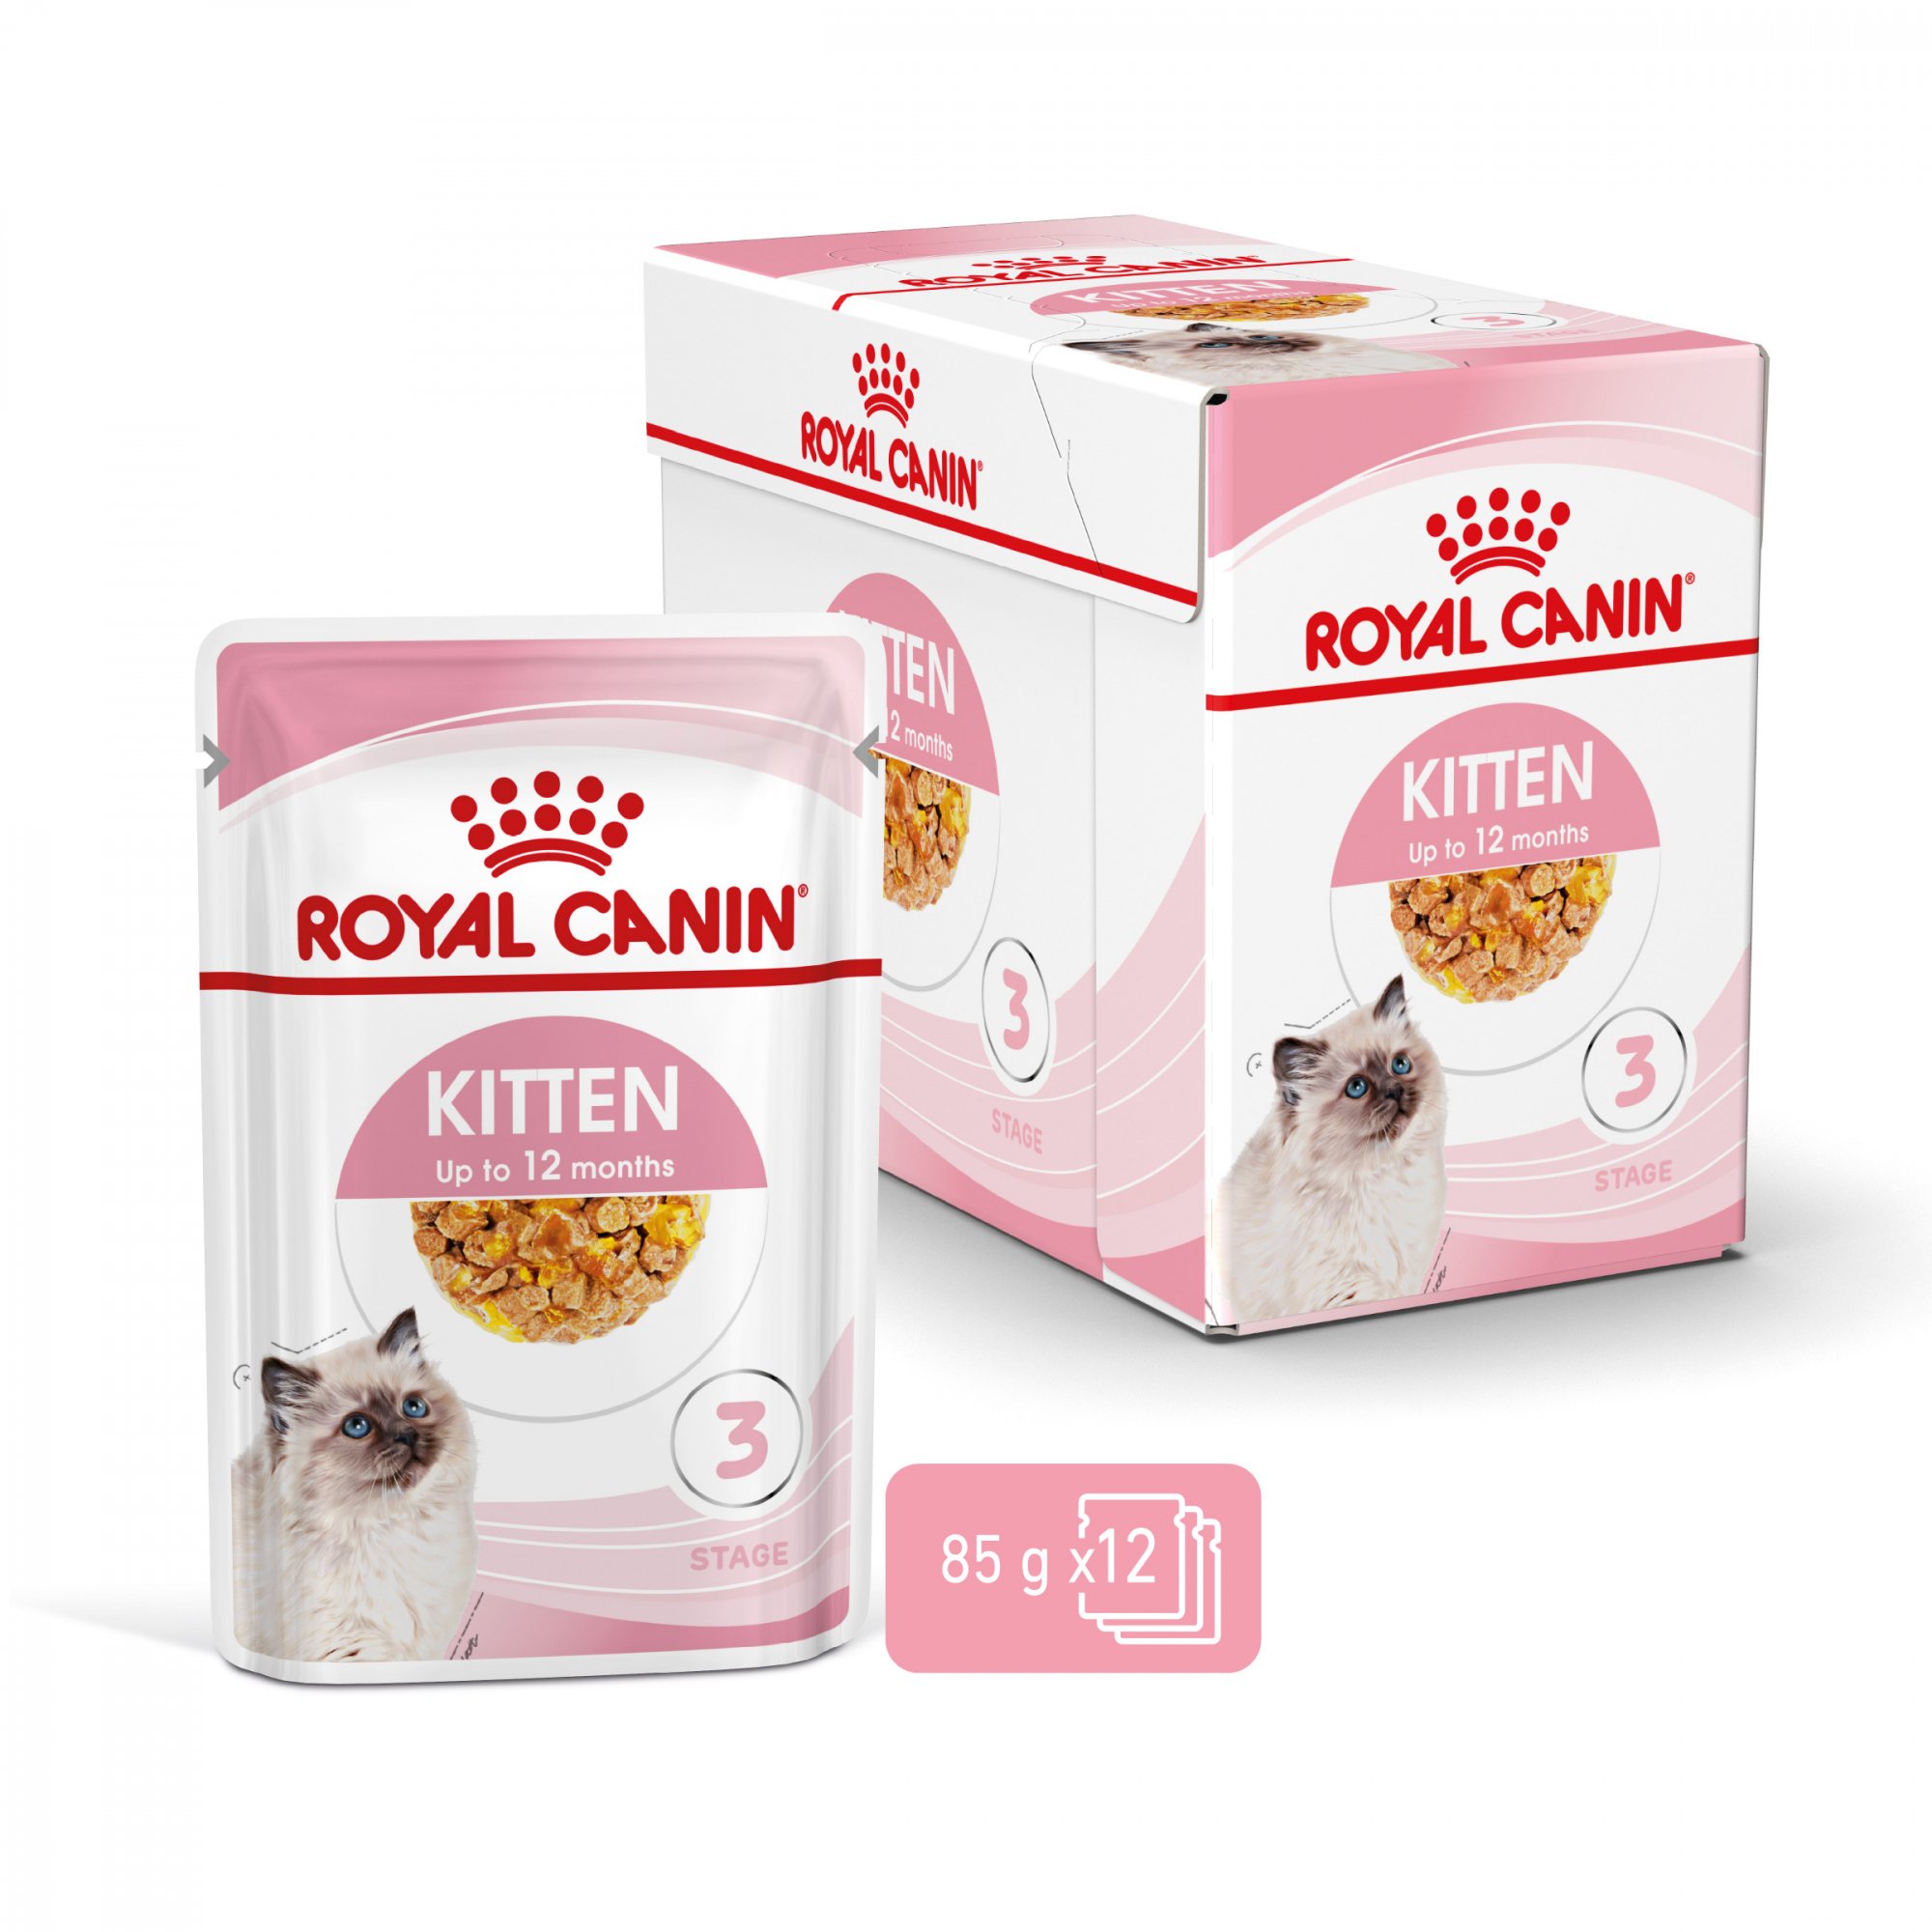 ROYAL CANIN Kitten Bocaditos en gelatina para gatitos de 4 a 12 meses